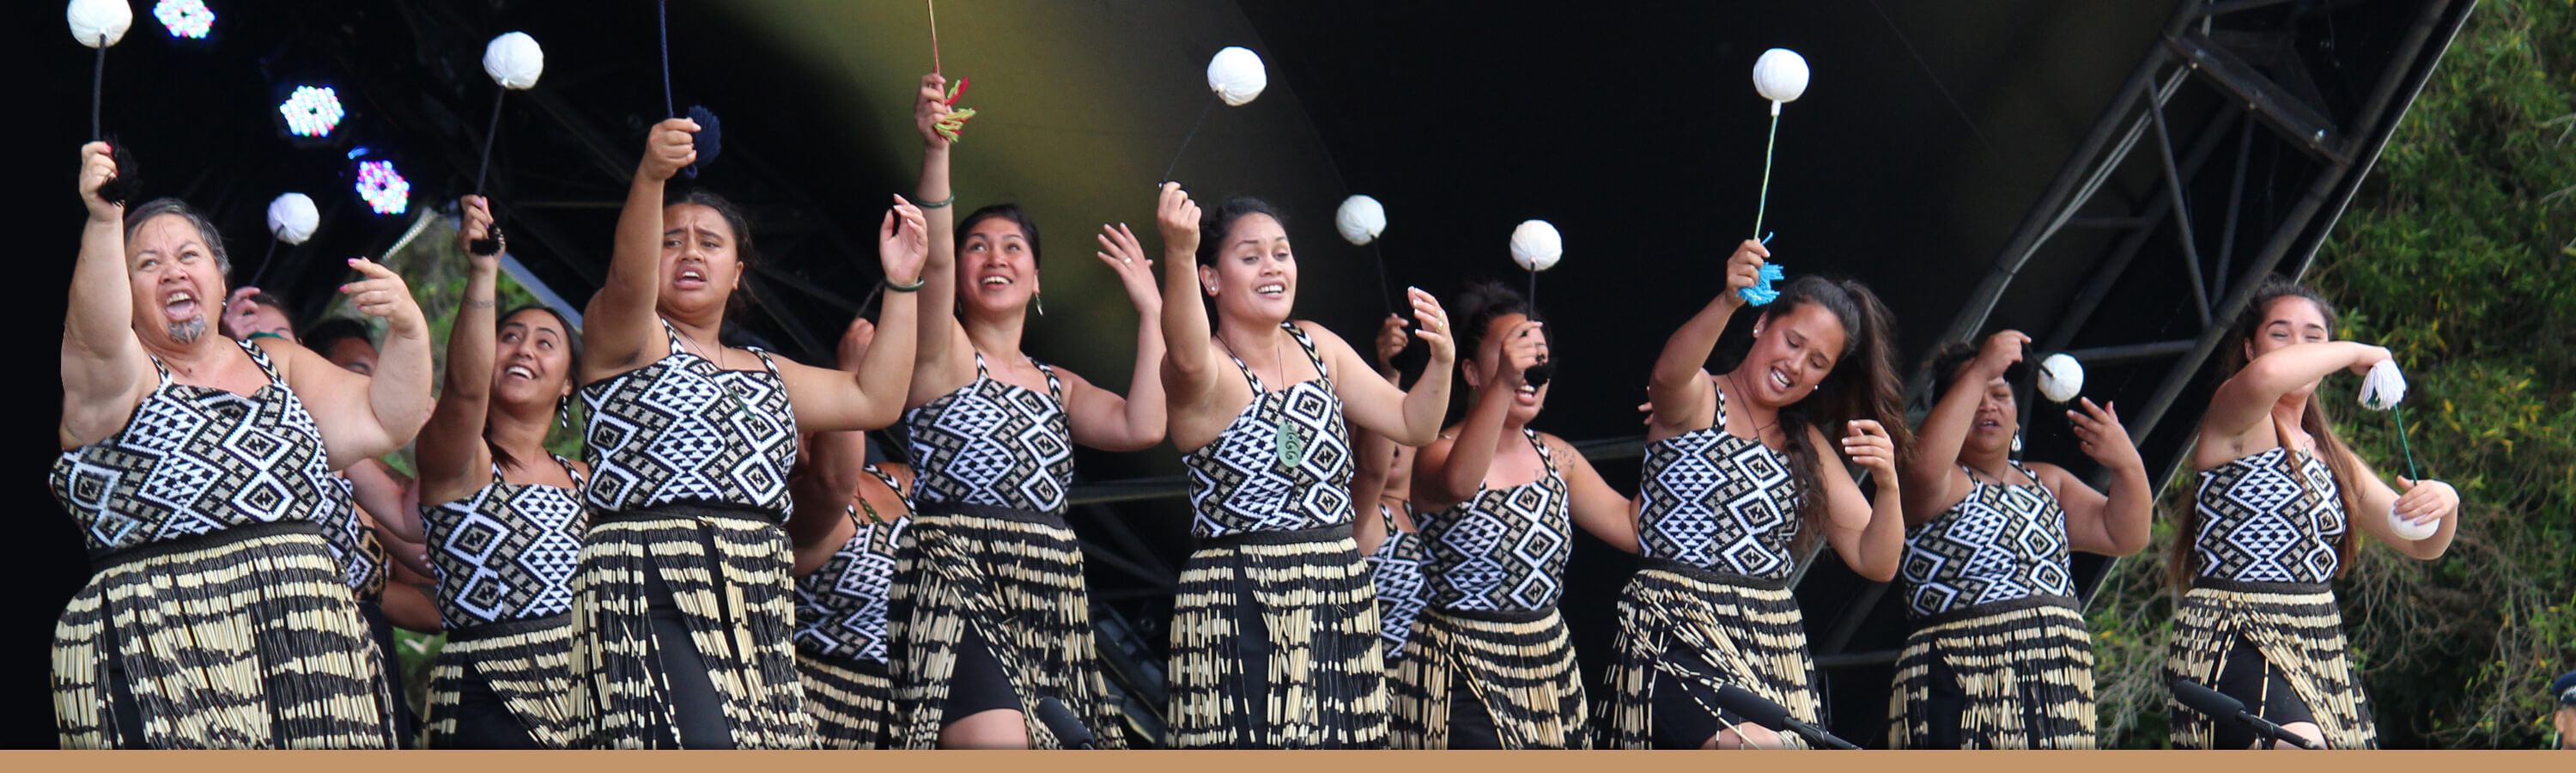 Maori Culture Far North New Zealand